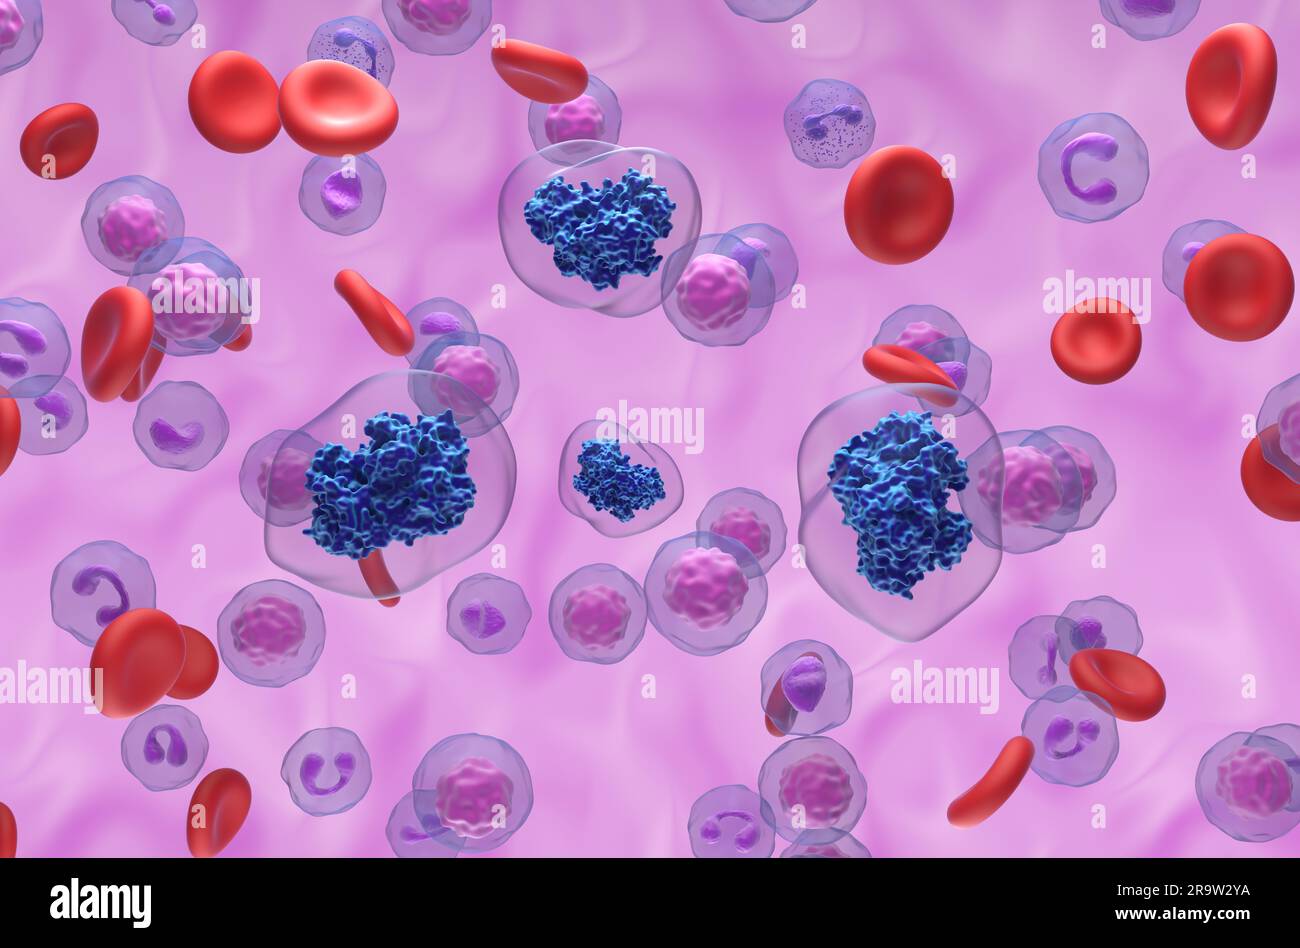 Aspirina molecole di acido acetilsalicilico (ASA) nel flusso sanguigno - visualizzazione isometrica illustrazione 3d. Foto Stock